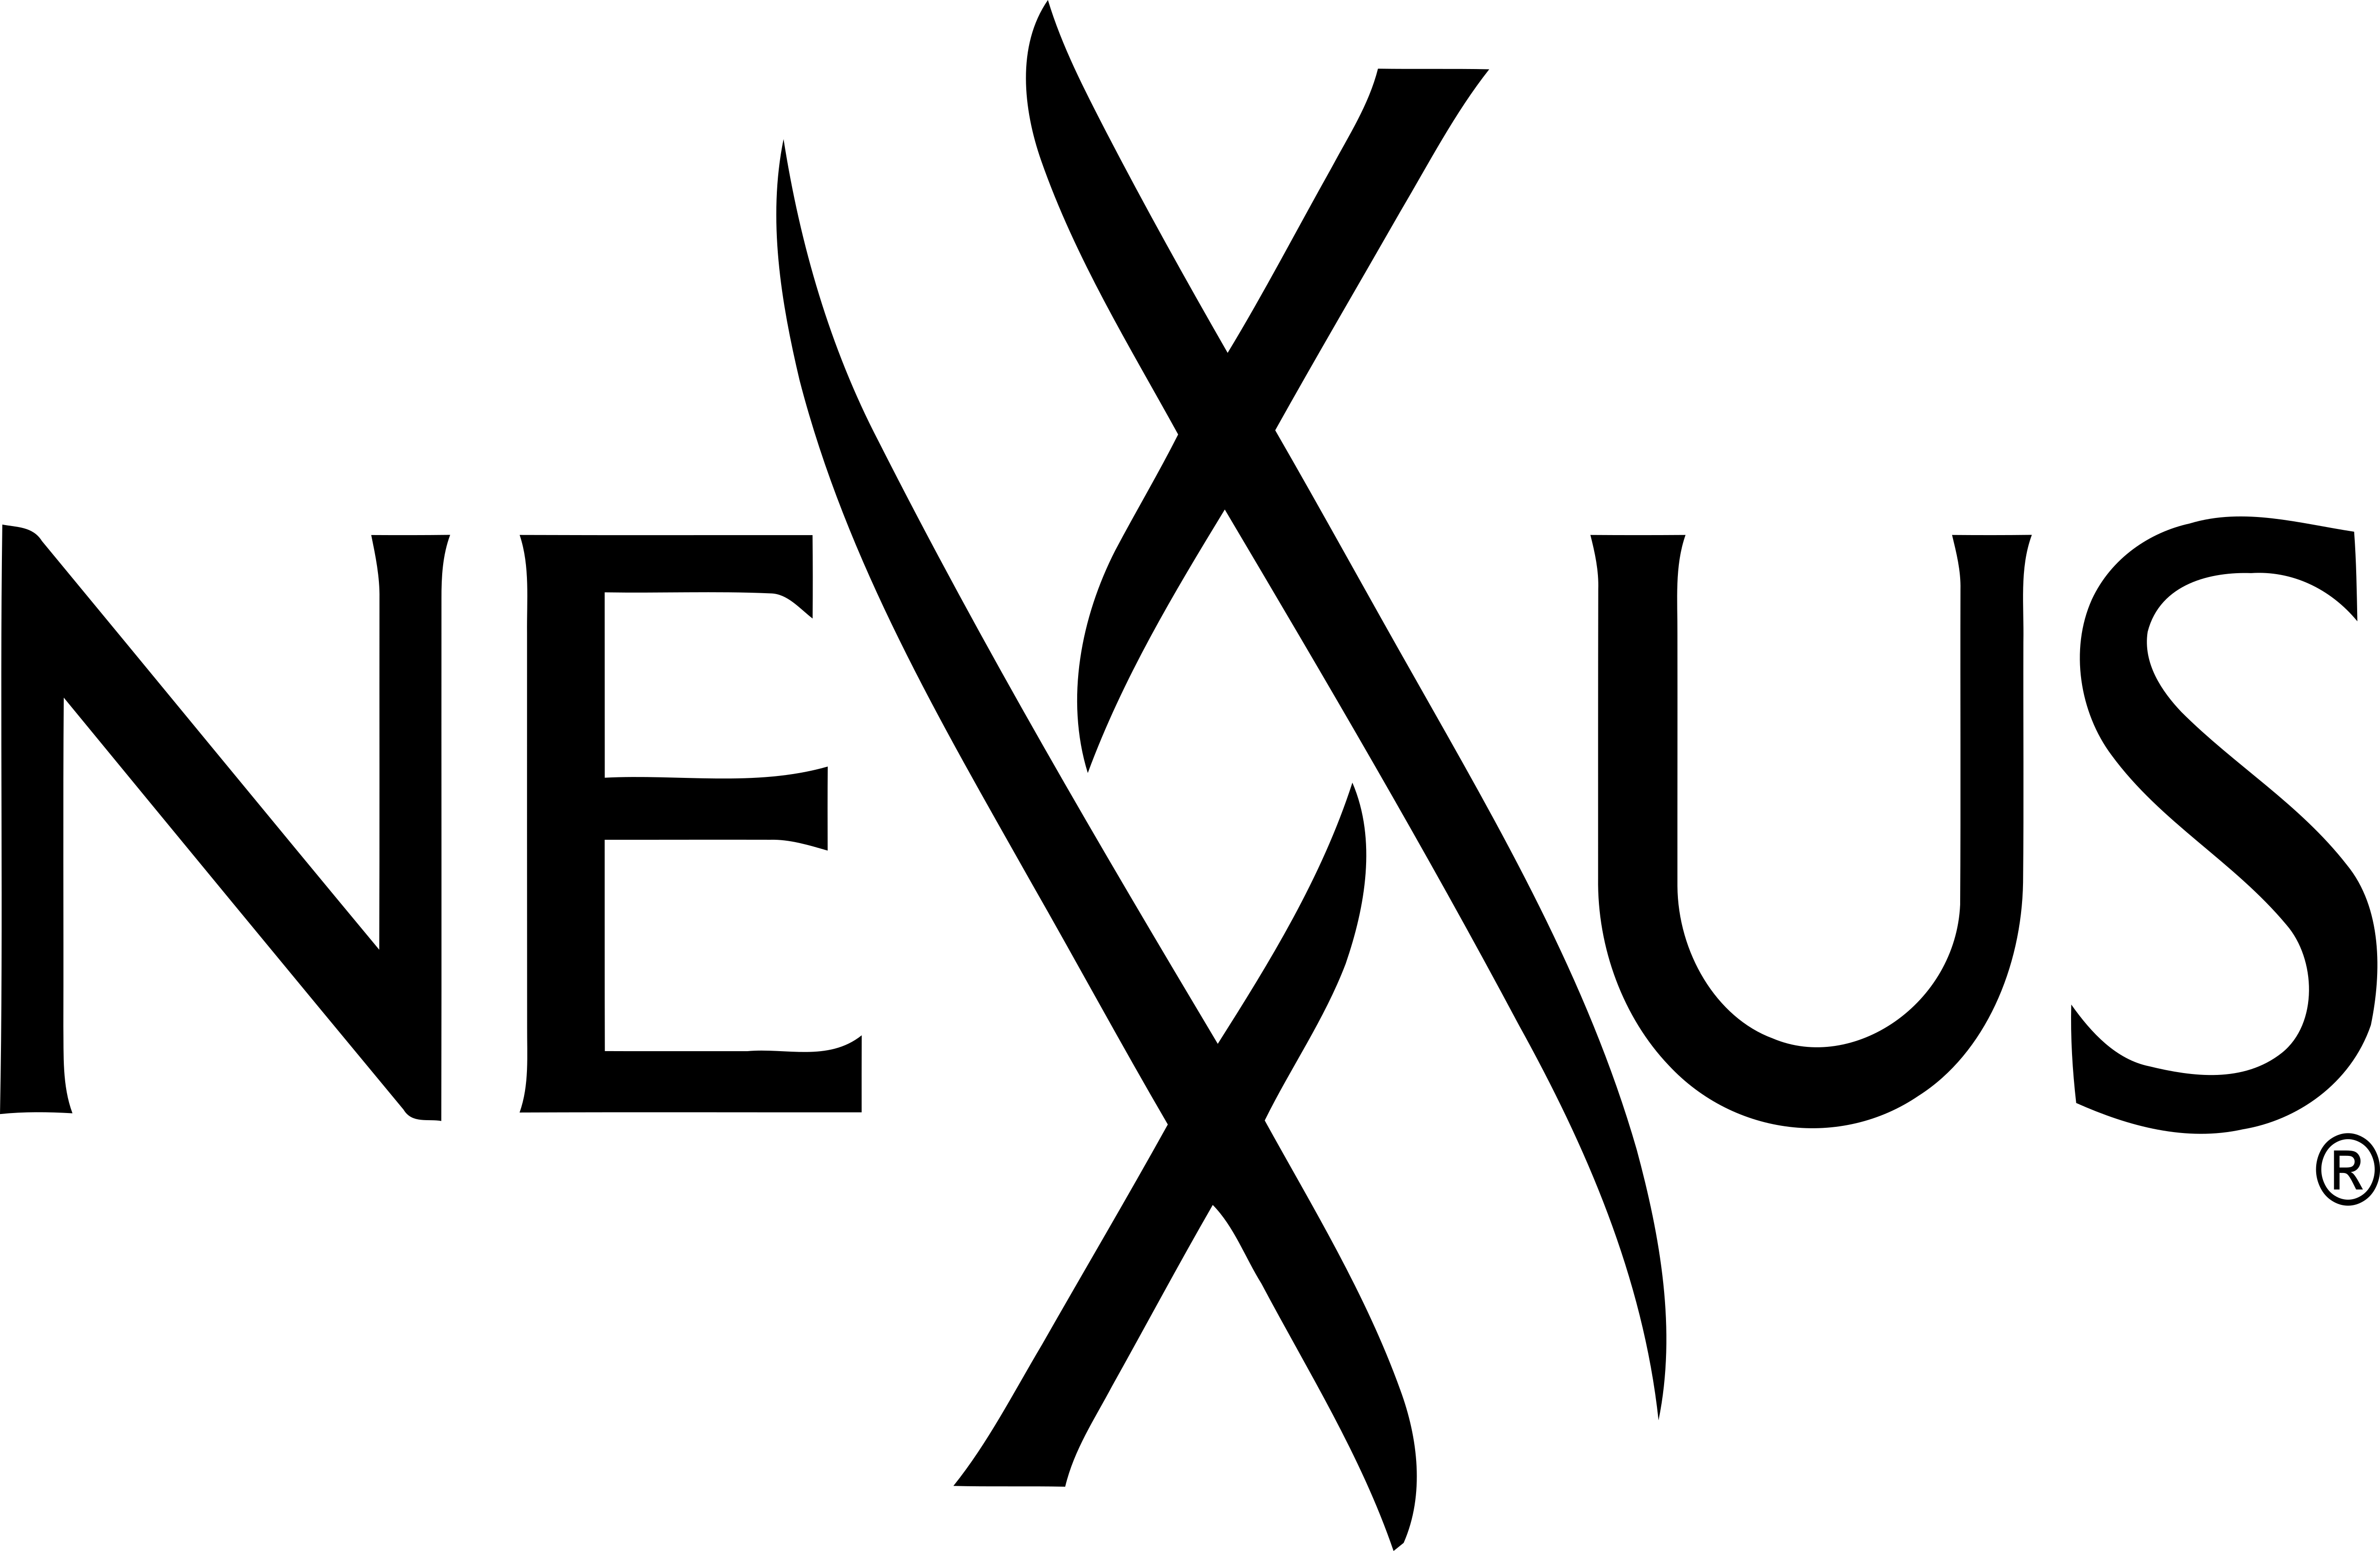 Nexxus Logo - Nexxus – Logos Download